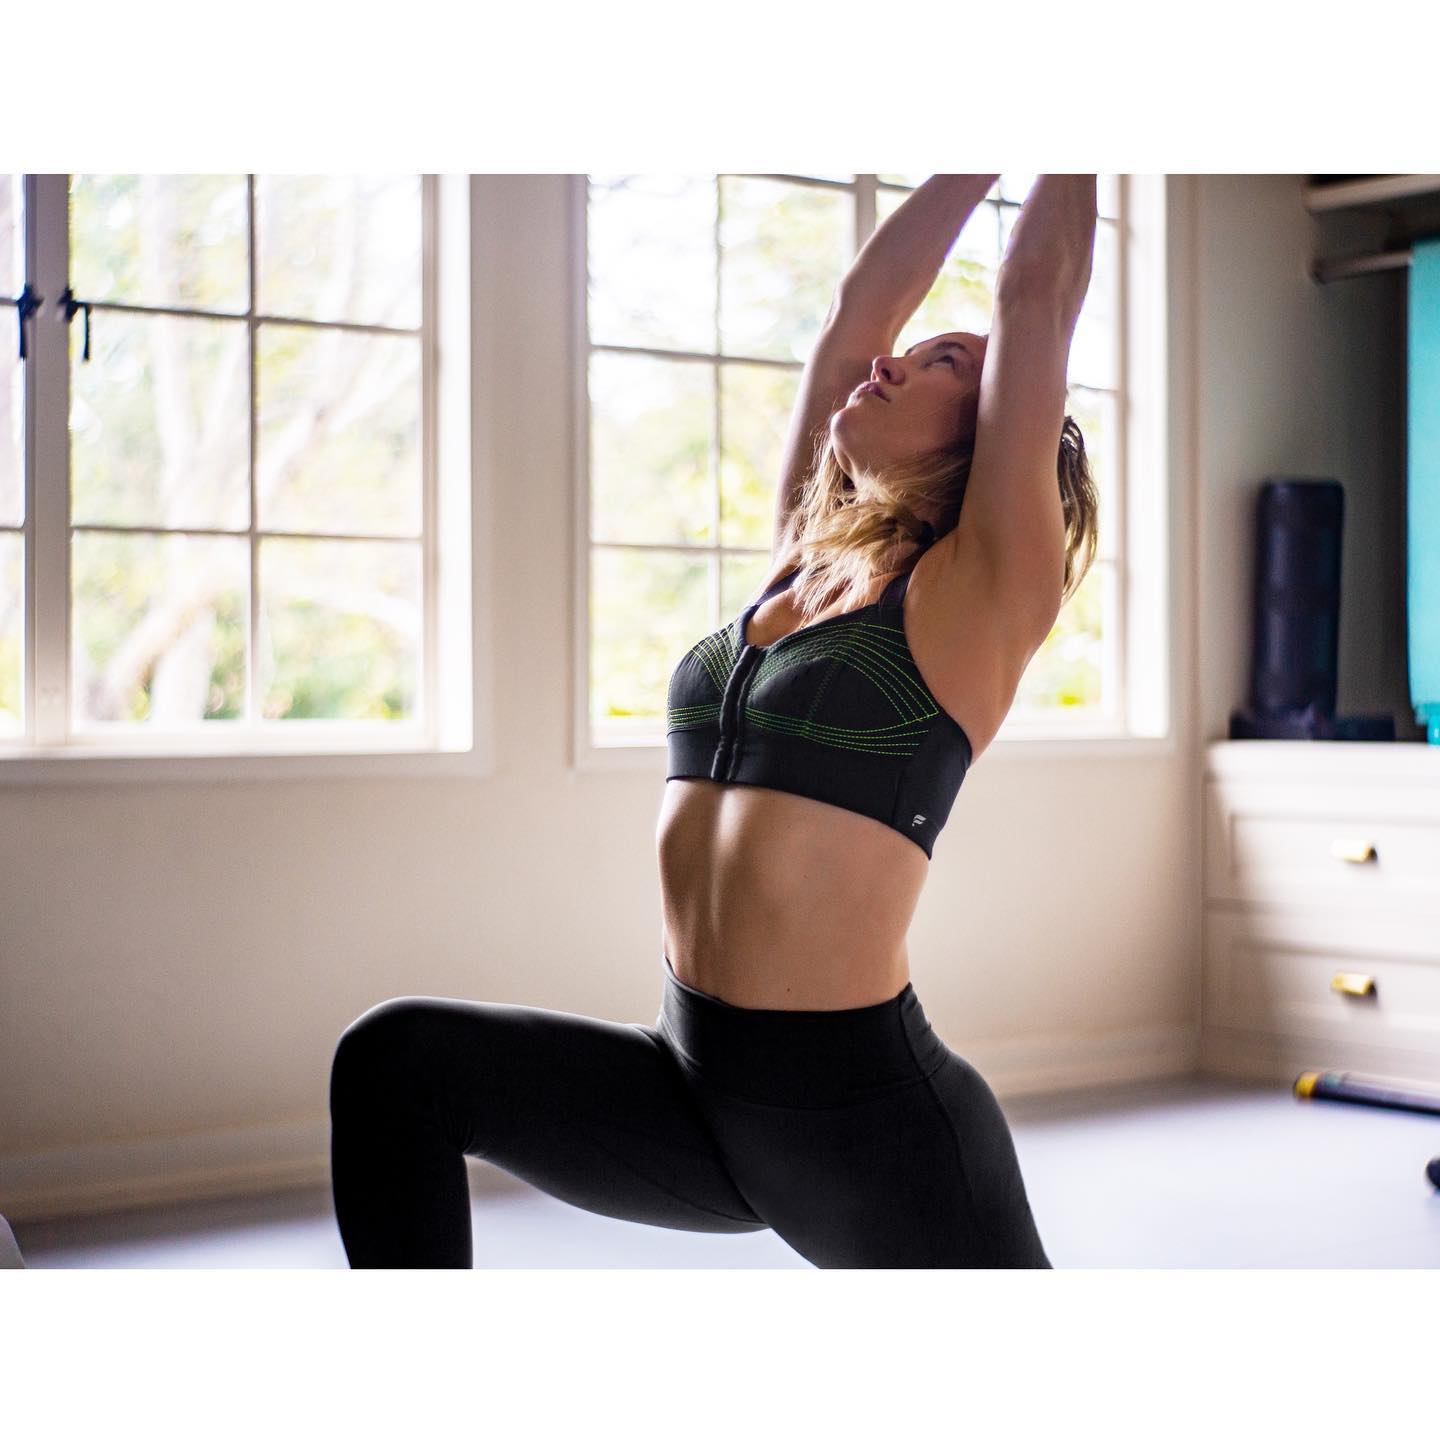 Photos n°2 : Yoga with Kate Hudson!